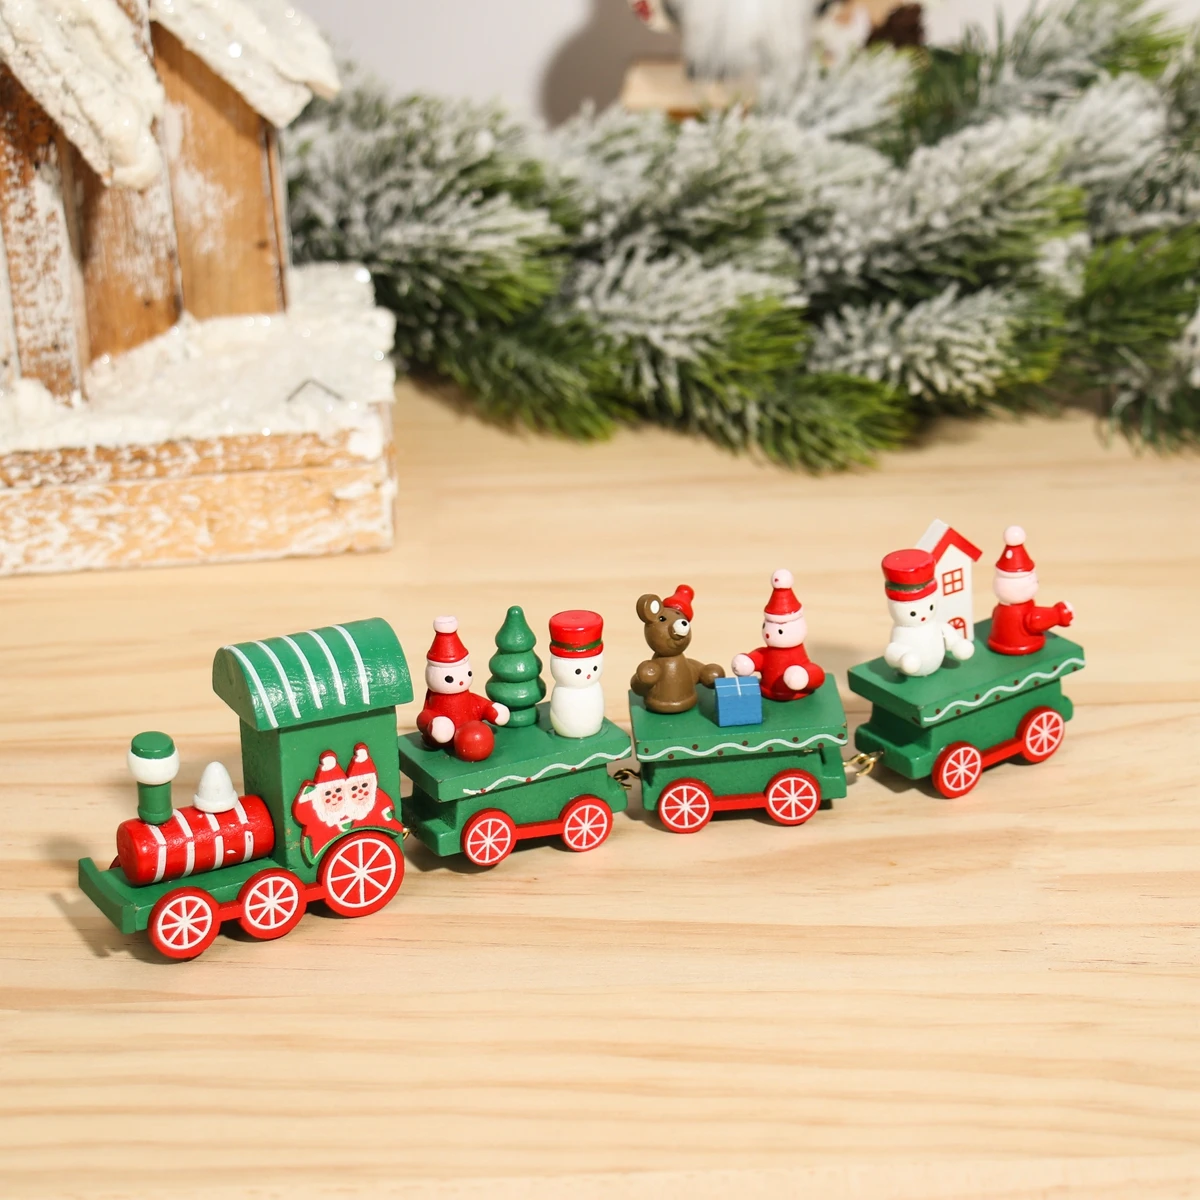 LEZED Decorazione di Natale Legno Treno Ornamenti Giocattolo Mini Treno Ornamenti Regalo per Bambini Giocattolo a Tema Natalizio Treno per laccogliente Atmosfera Natalizia Rosso 